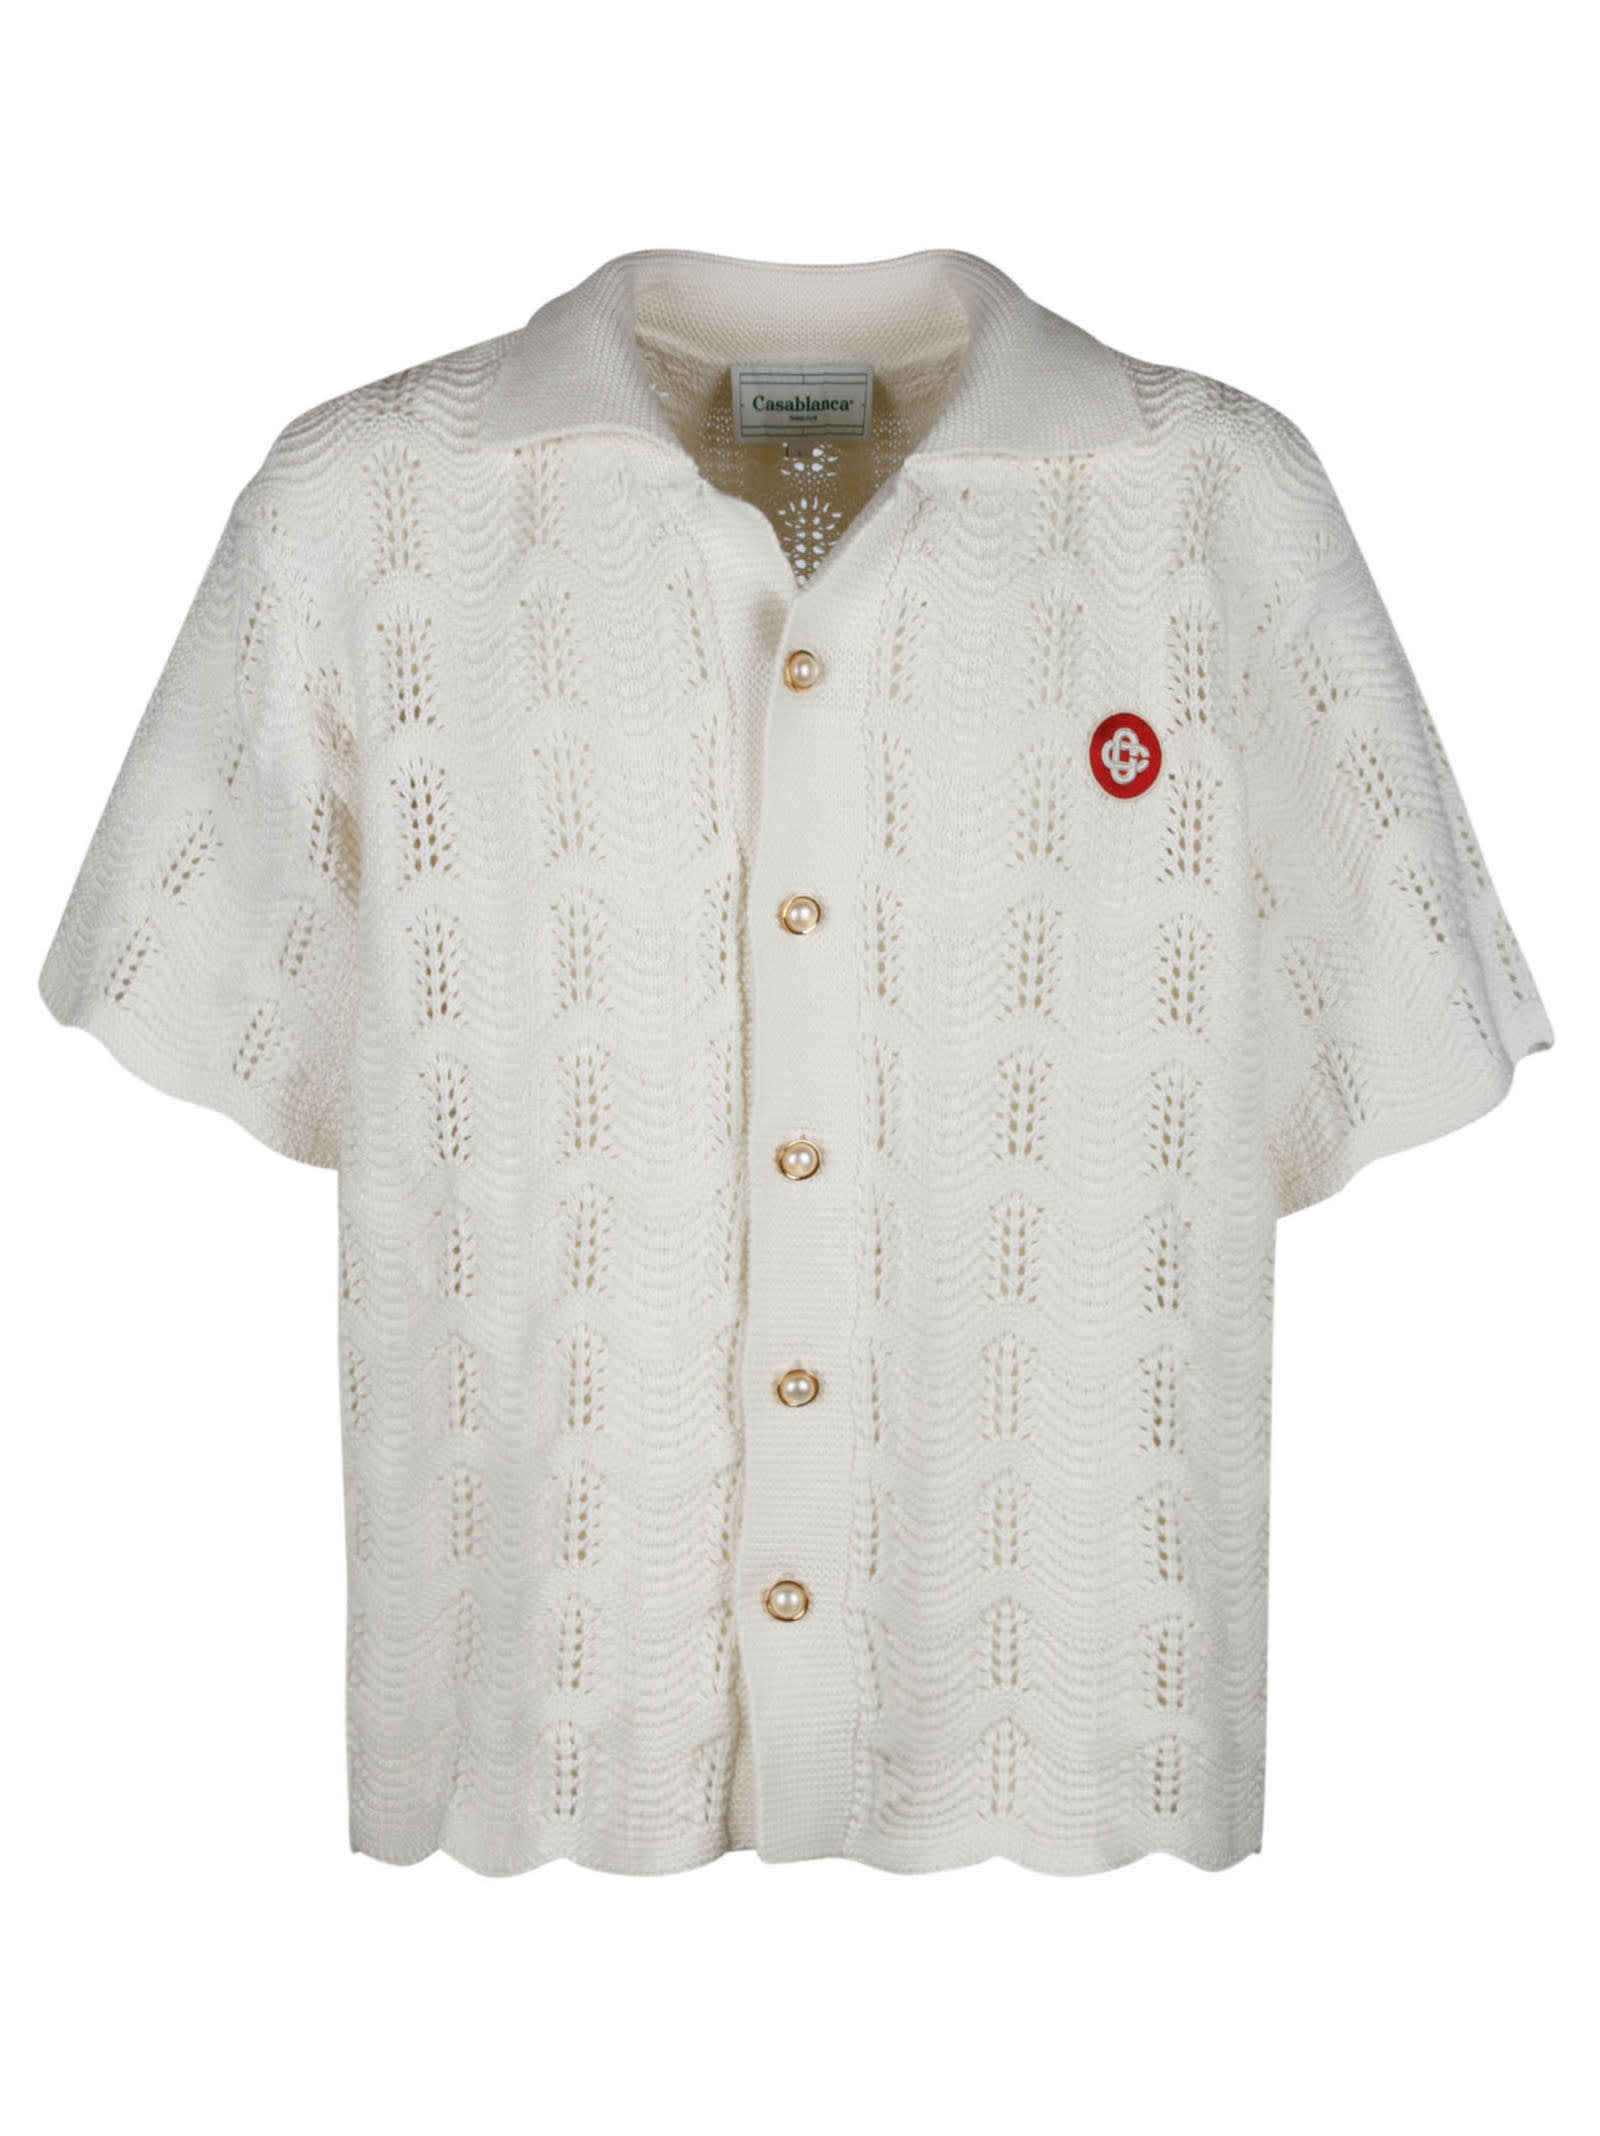 Casablanca Crochet Polo Shirt